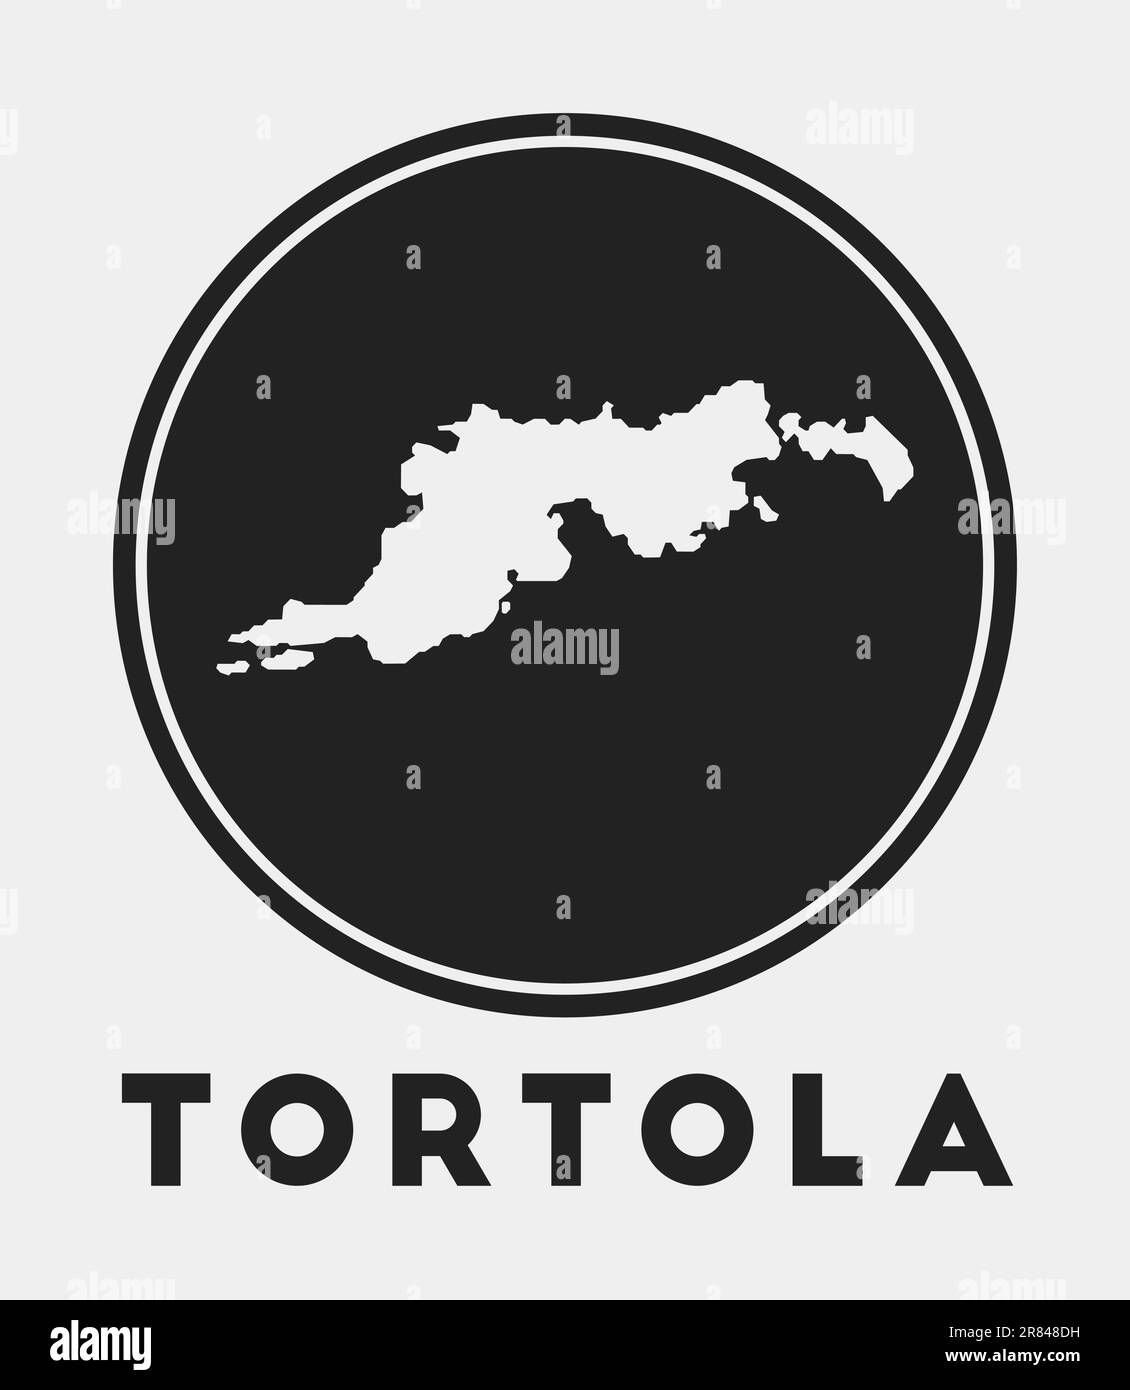 Tortola icon. Round logo with island map and title. Stylish Tortola ...